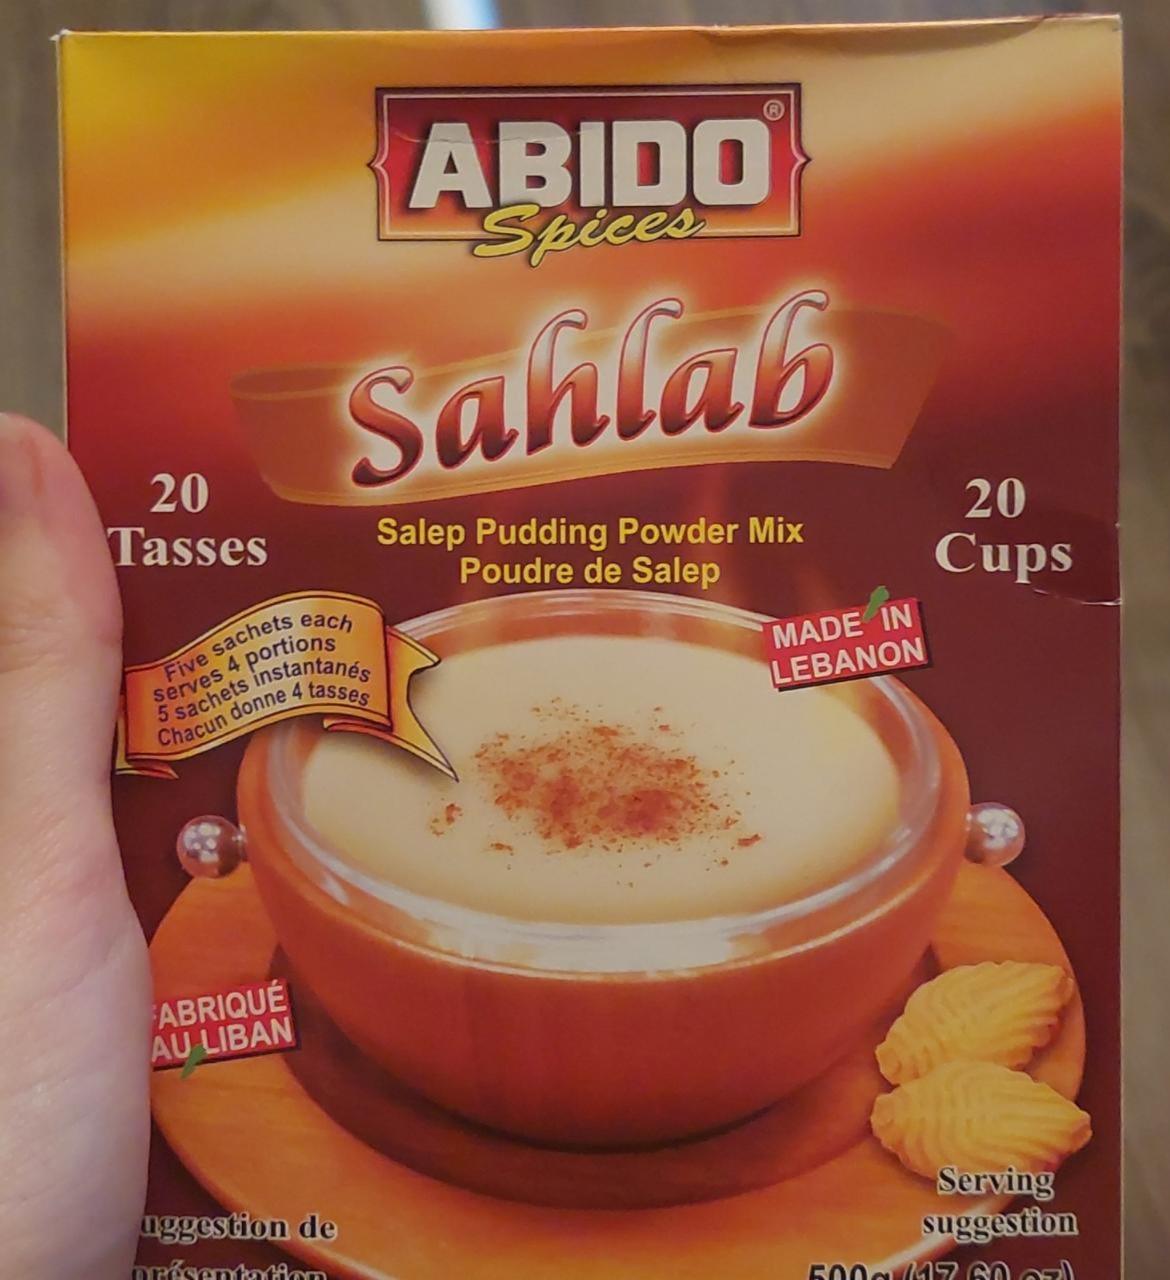 Képek - Sahlab Abido spices